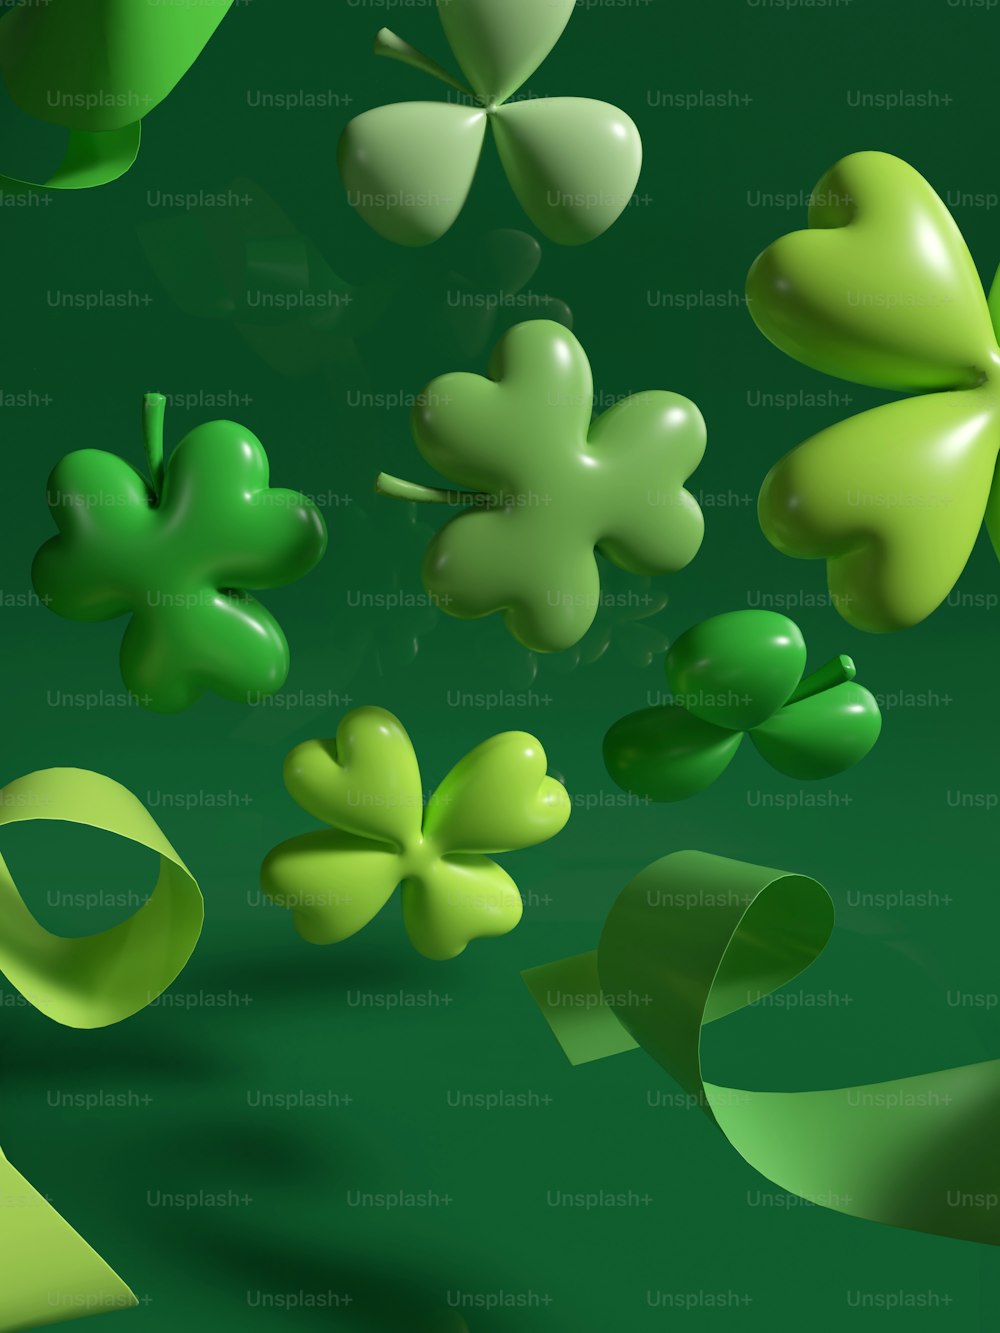 Ein Haufen grüner Kleeblätter schwebt in der Luft